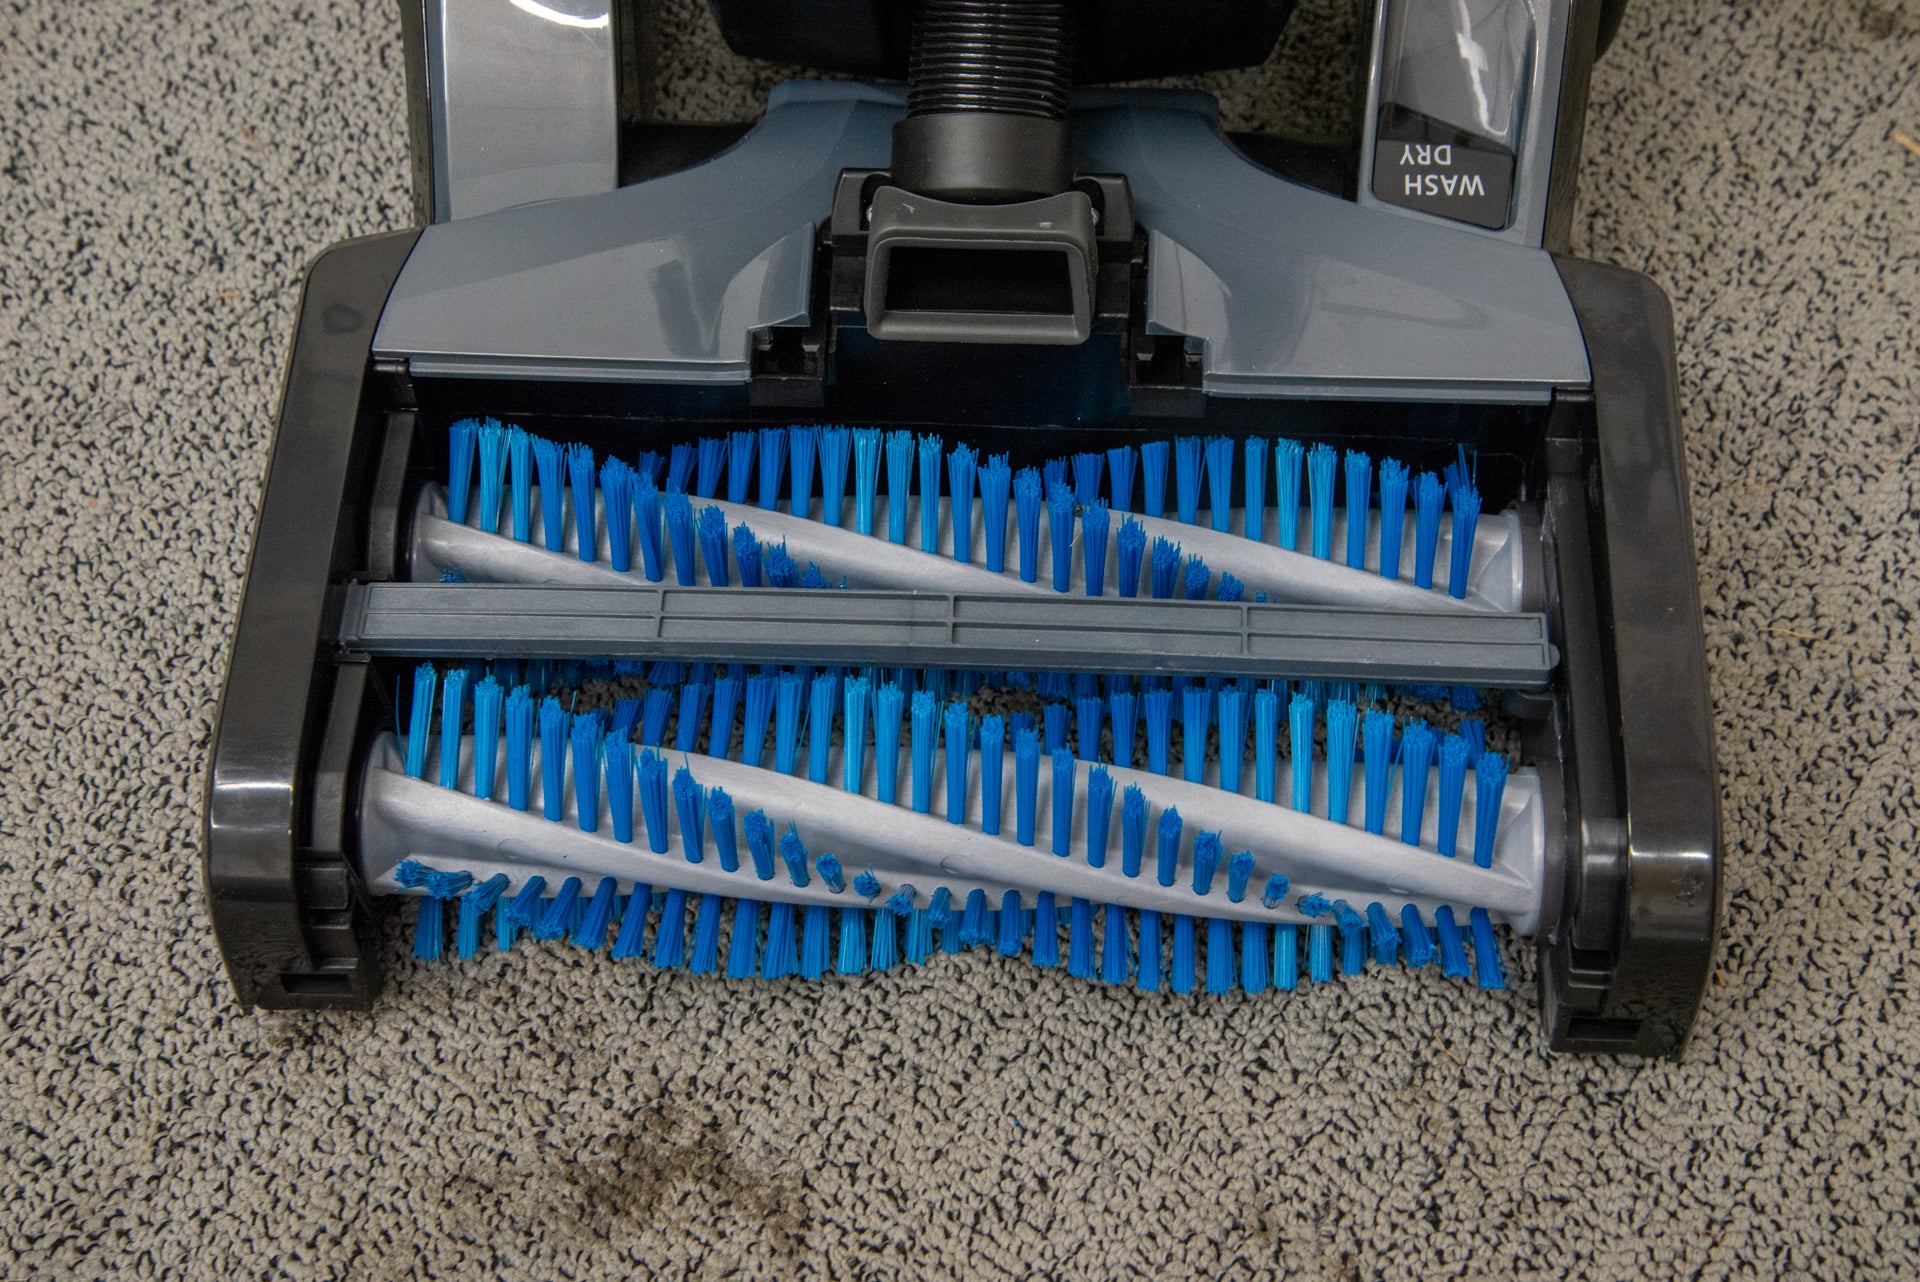 Vax Platinum SmartWash Carpet Cleaner brushes